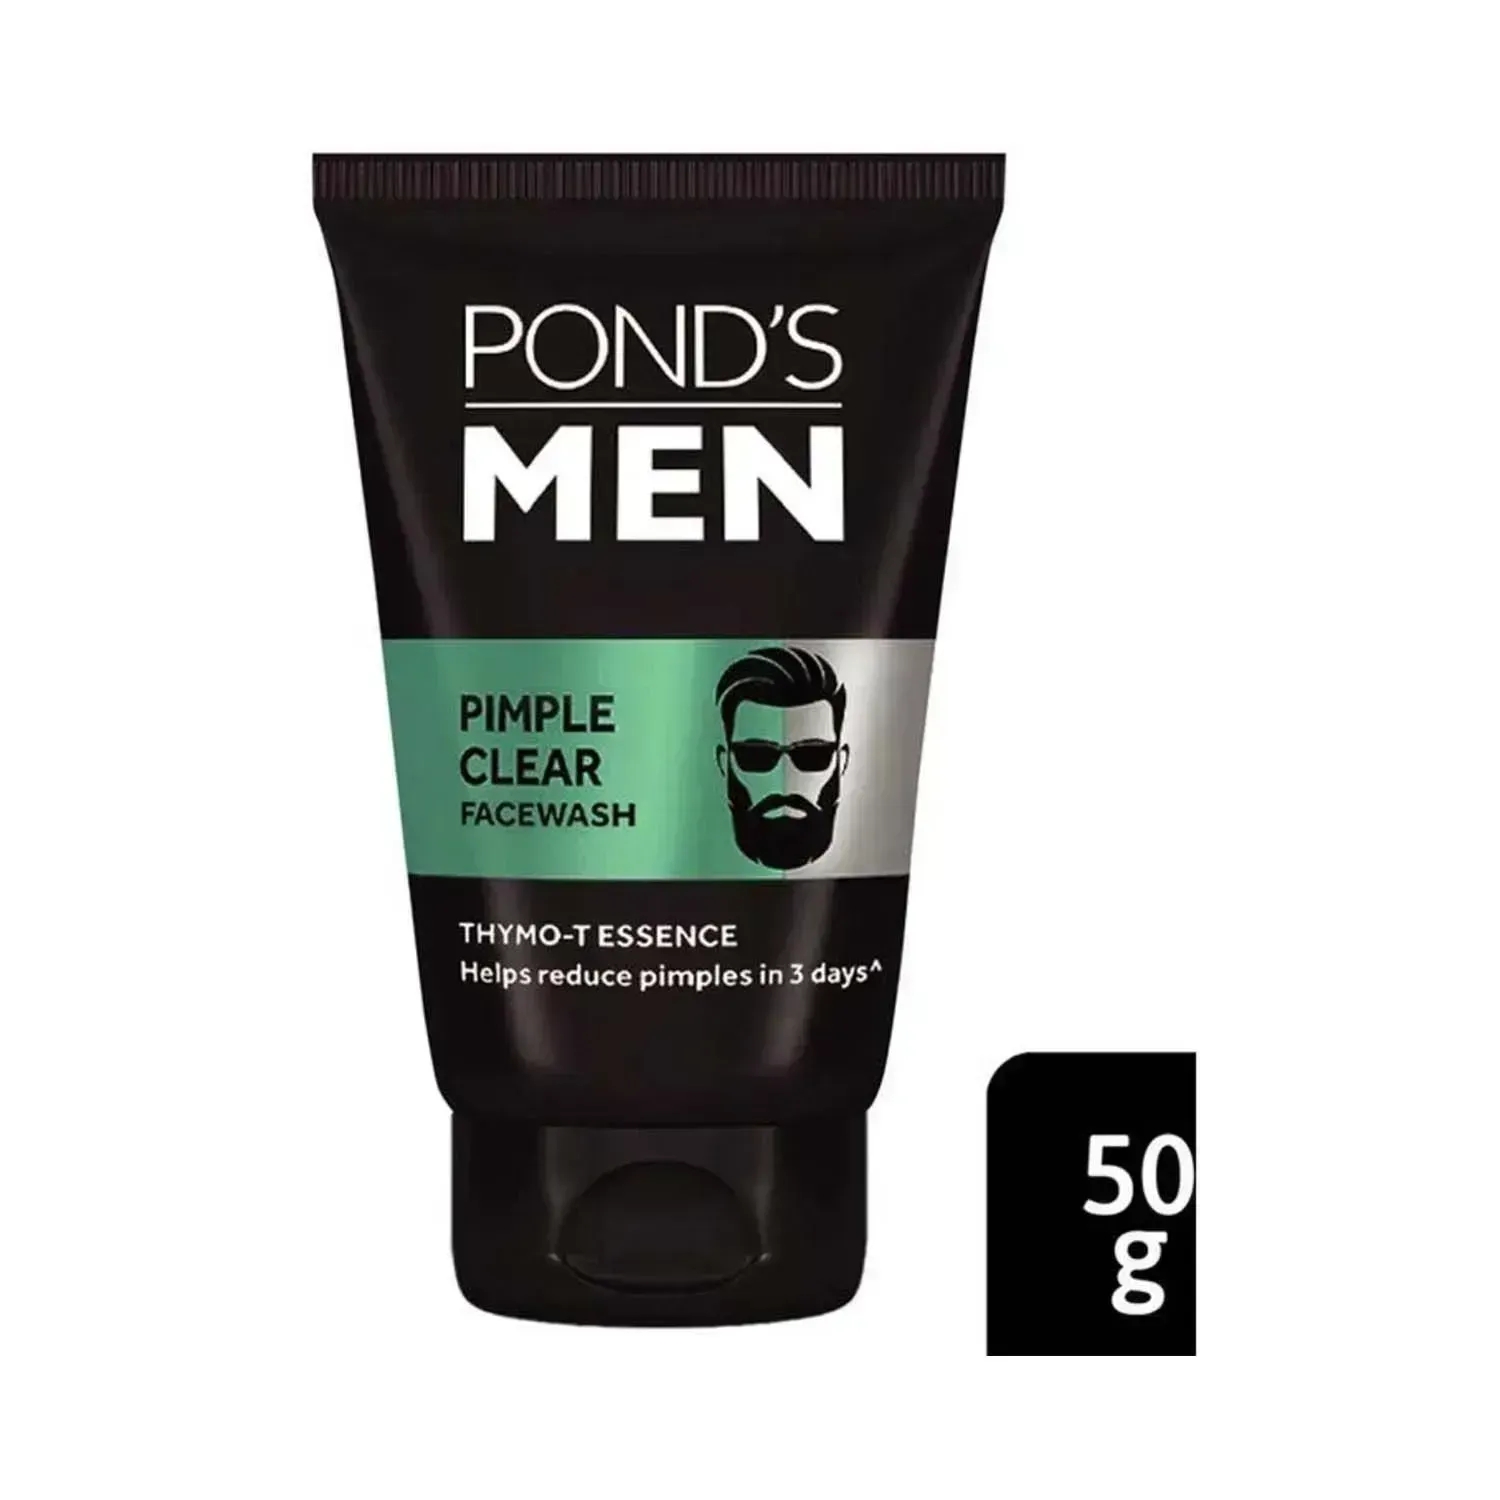 Pond's | Pond's Men Pimple Clear Facewash - (50g)